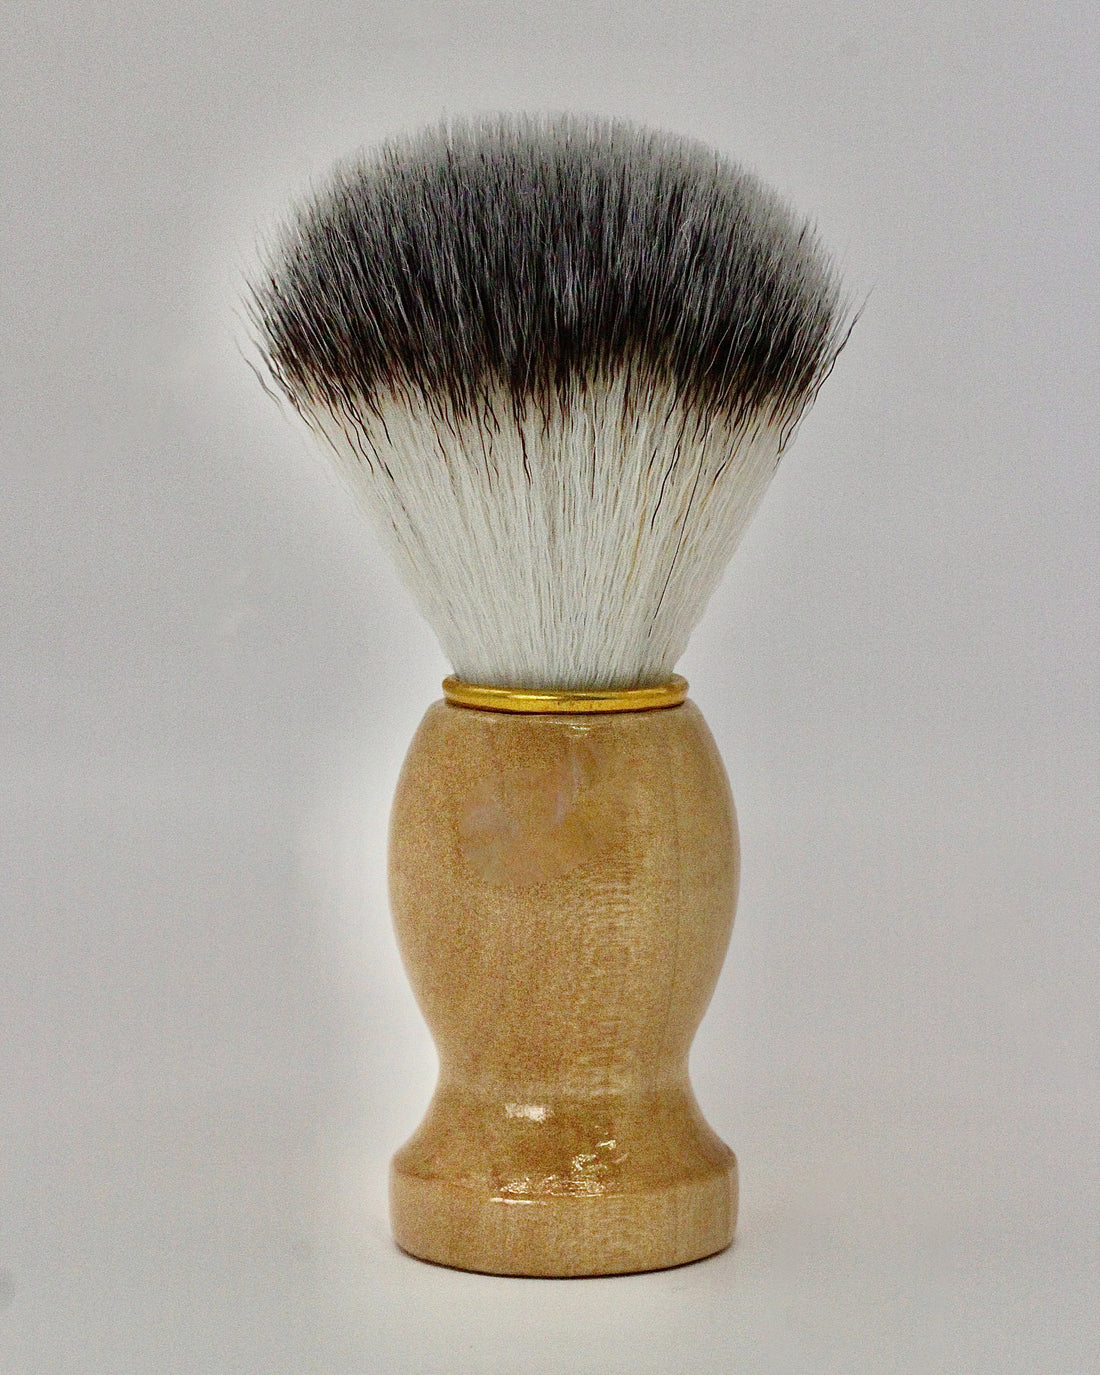 Badger Shave Brush